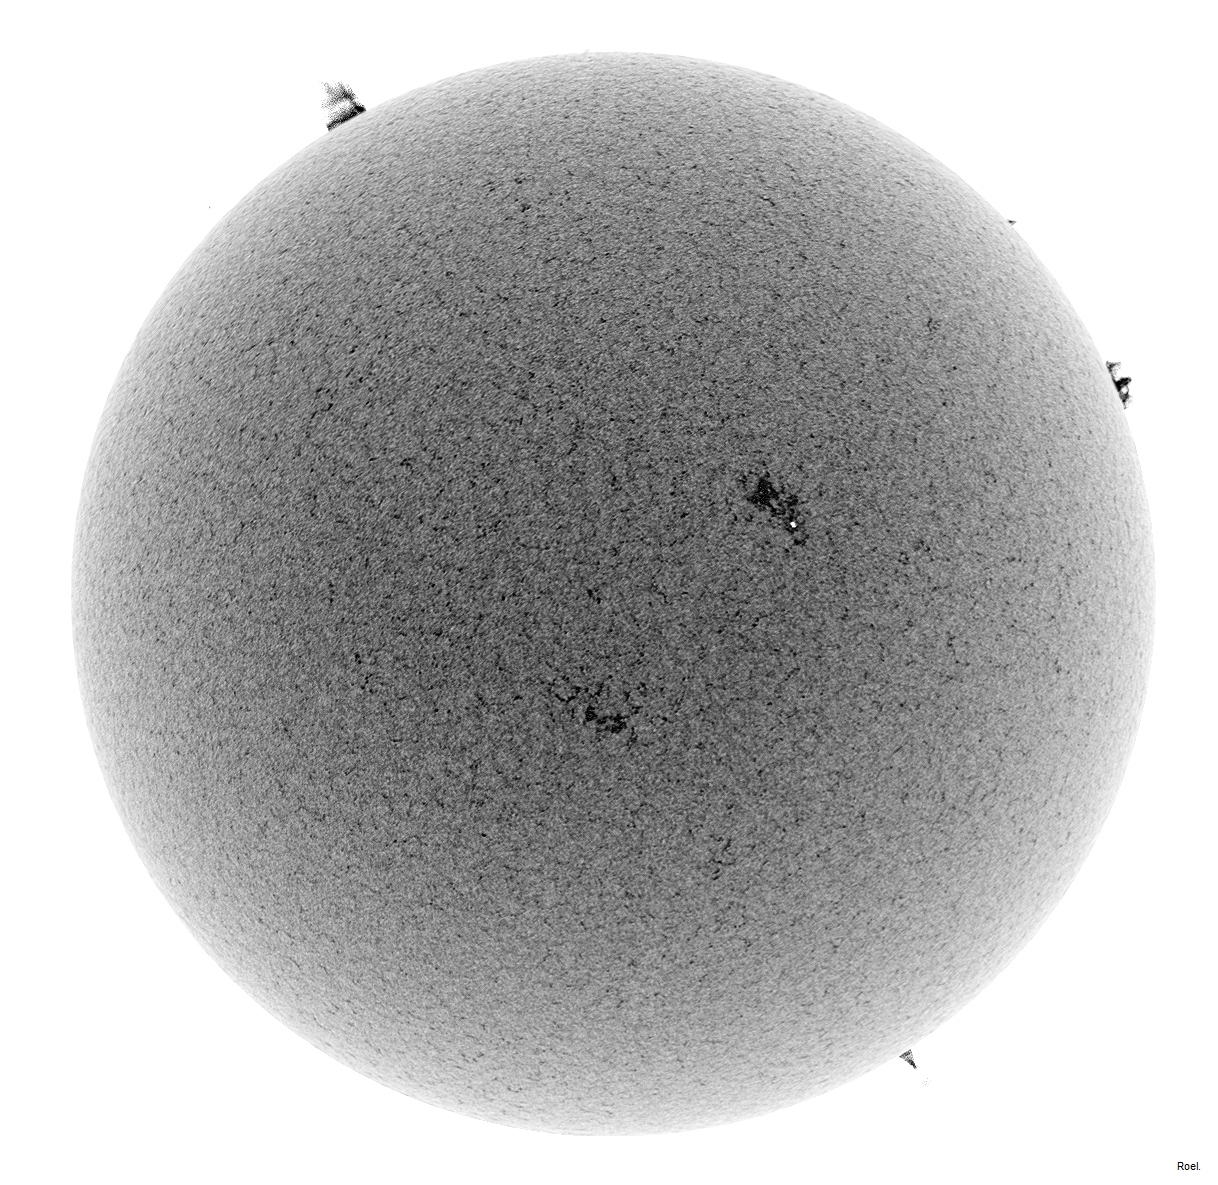 Sol del 8 de marzo del 2019-Meade-CaK-PSTmod-1neg.jpg